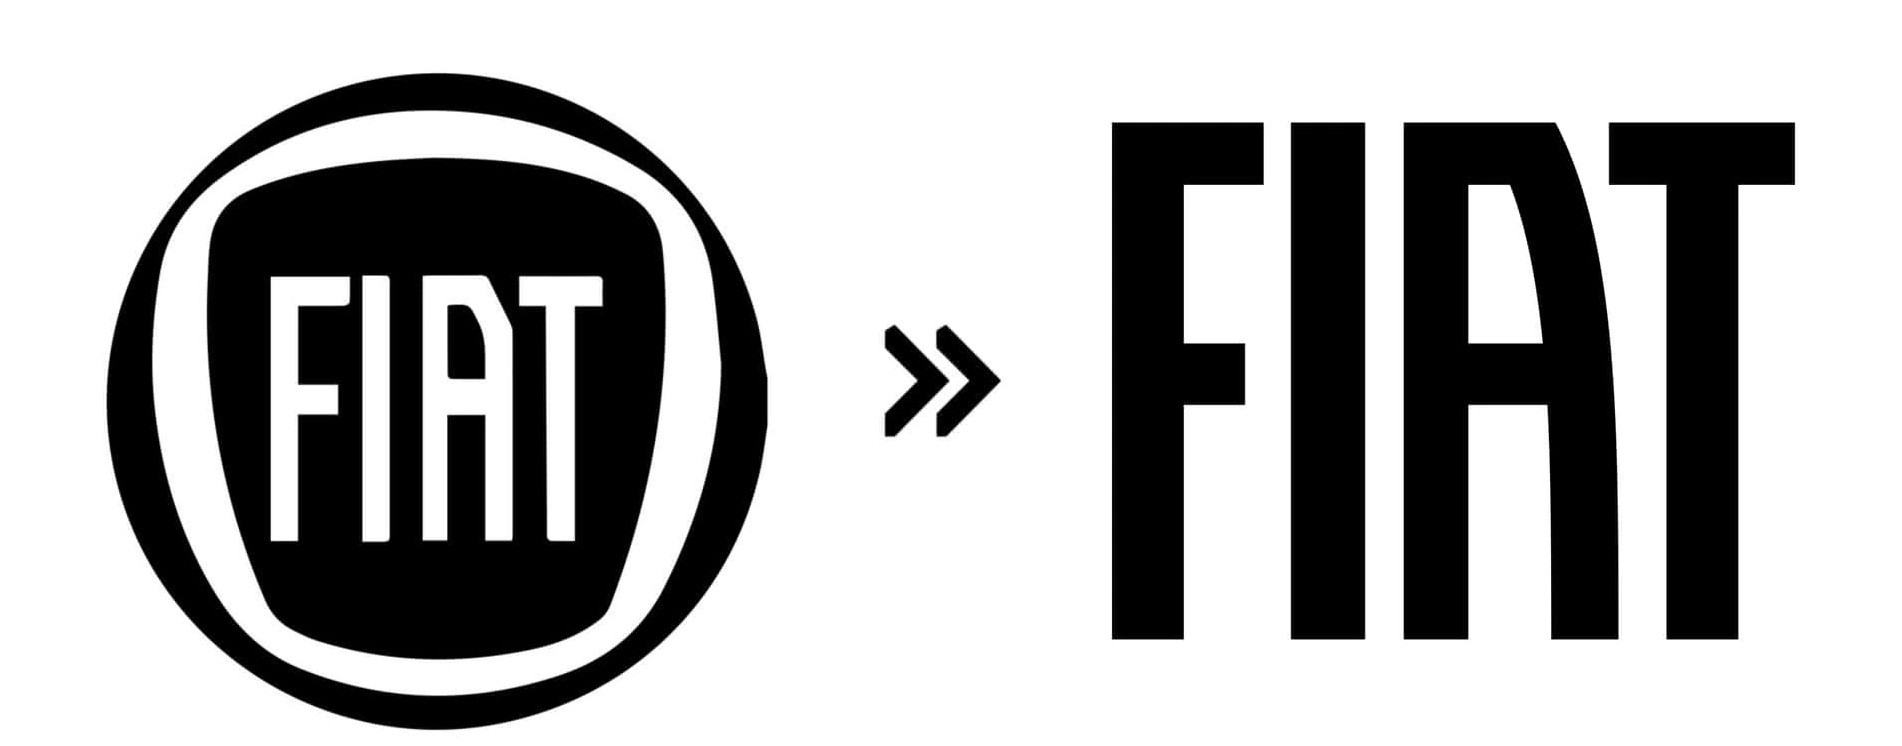 Fiat (2020): Vào năm 2020, Fiat bỏ lại phần viền logo và phóng to dòng chữ tên thương hiệu bên trong để tạo thành logo mới dễ nhận diện từ xa hơn - Ảnh: Motor1